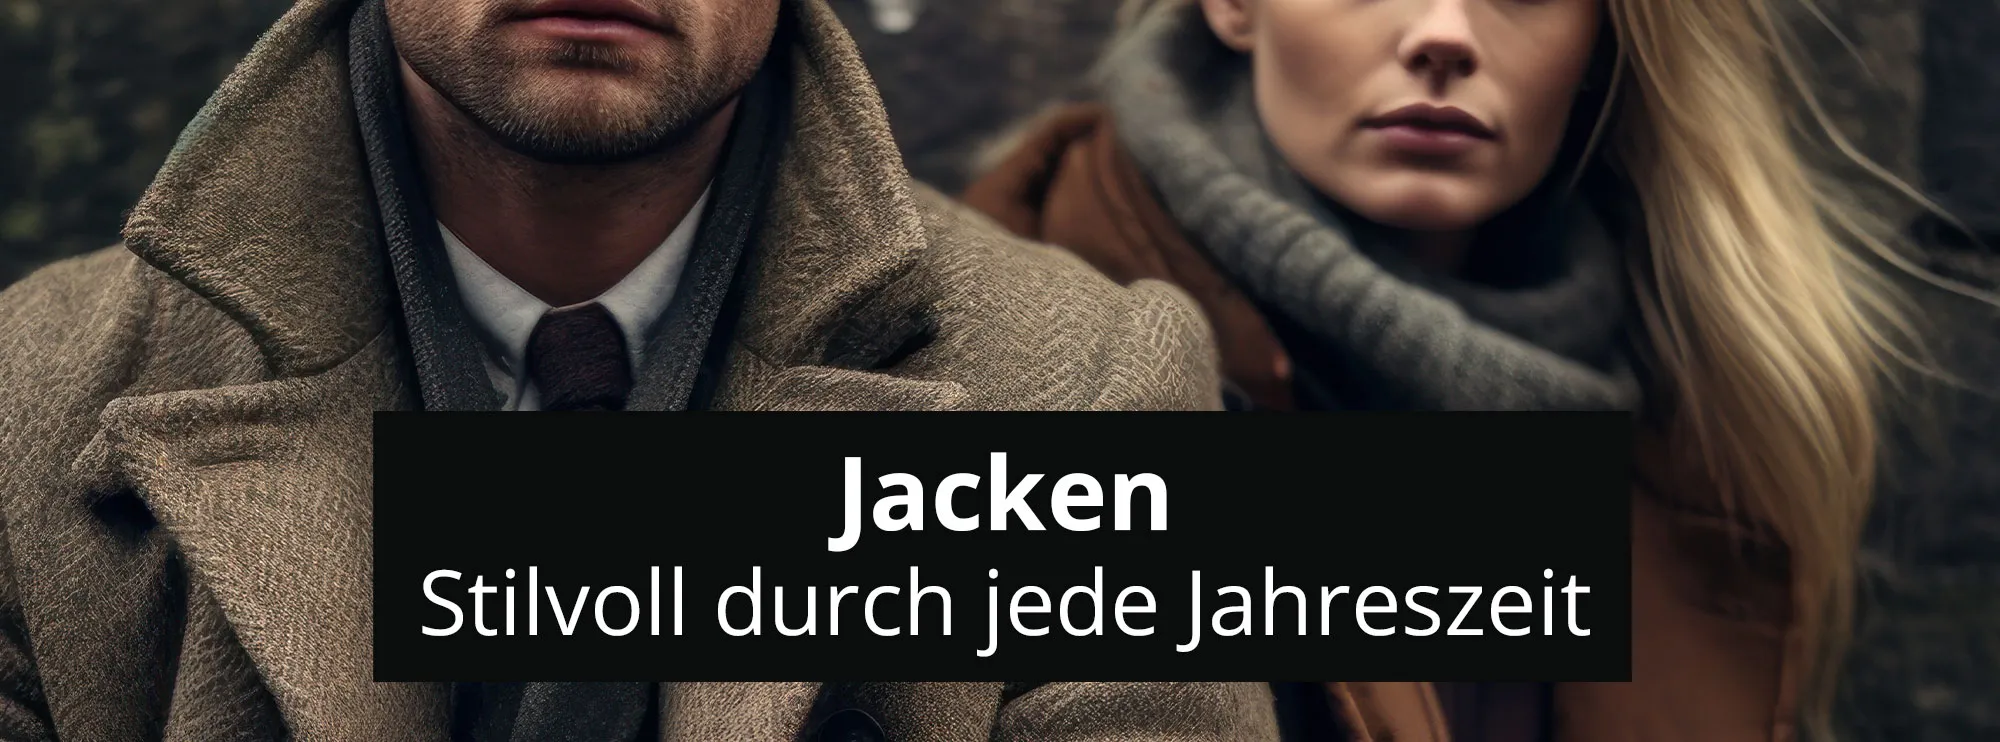 Jacken header rosier online shop